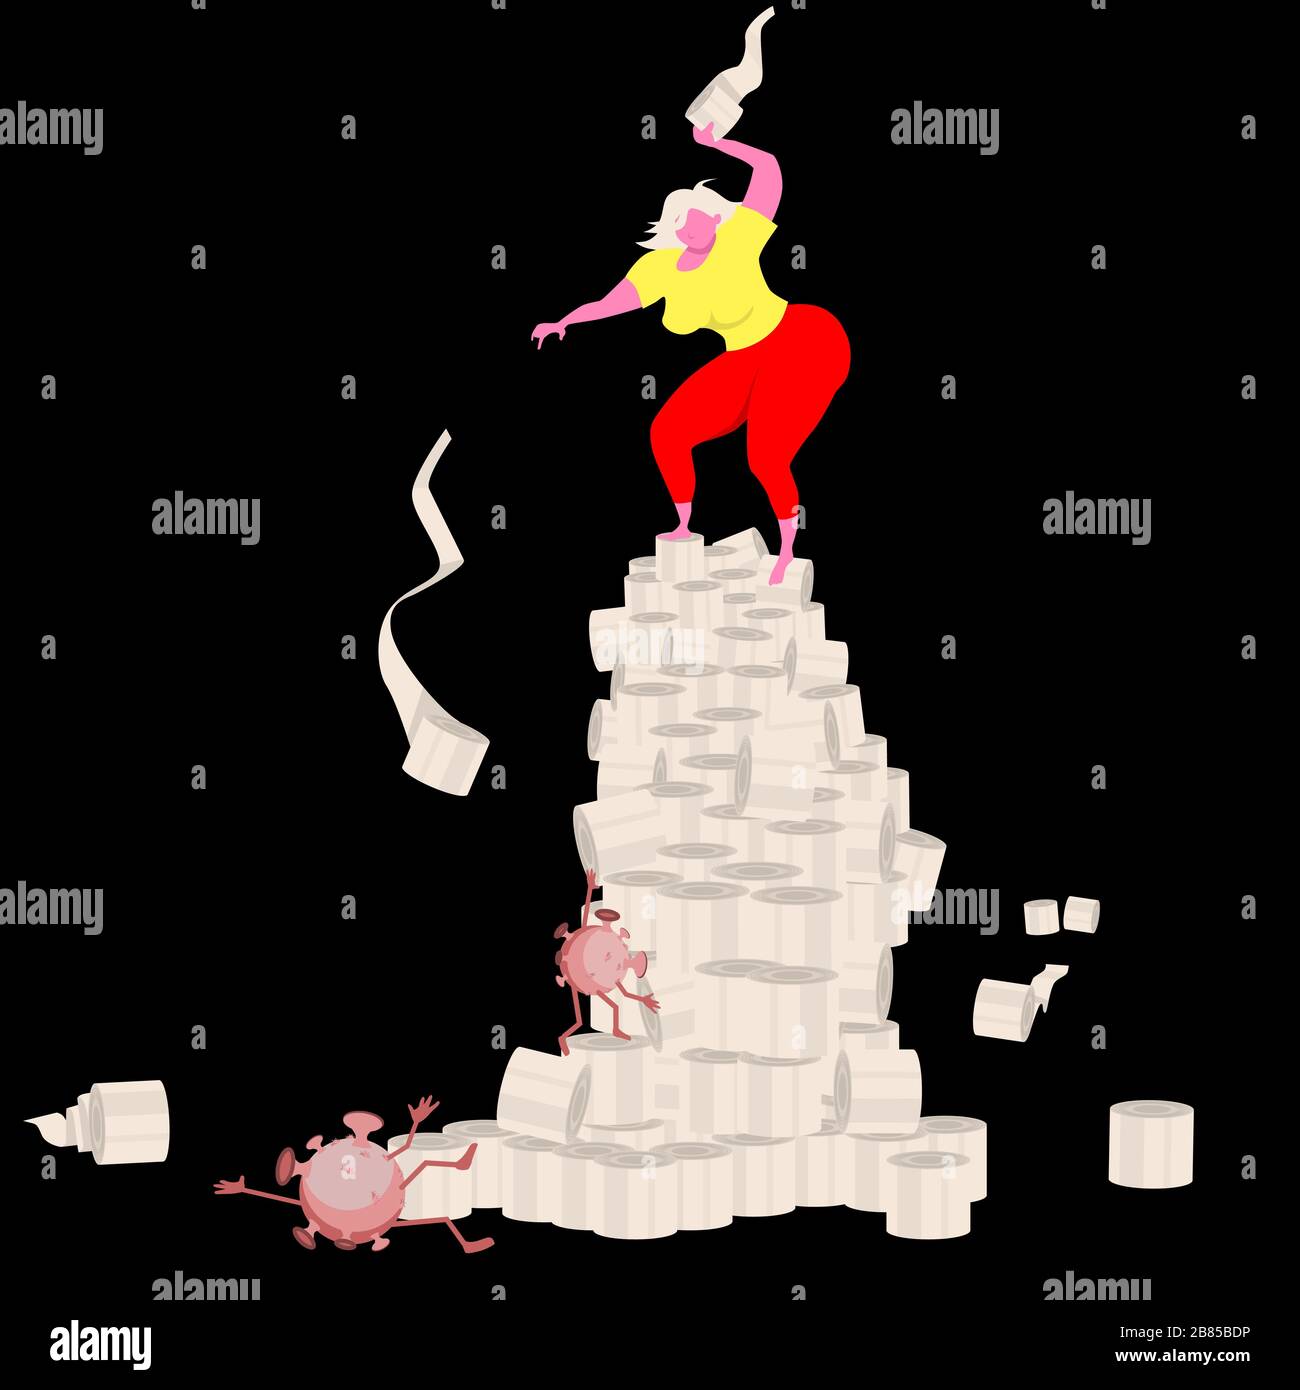 La victoire est la nôtre! Une fille debout sur une tour de rouleaux de papier de toilette combat un coronavirus monter. Concept humoristique de personnage de dessin animé. Vecteur il Illustration de Vecteur